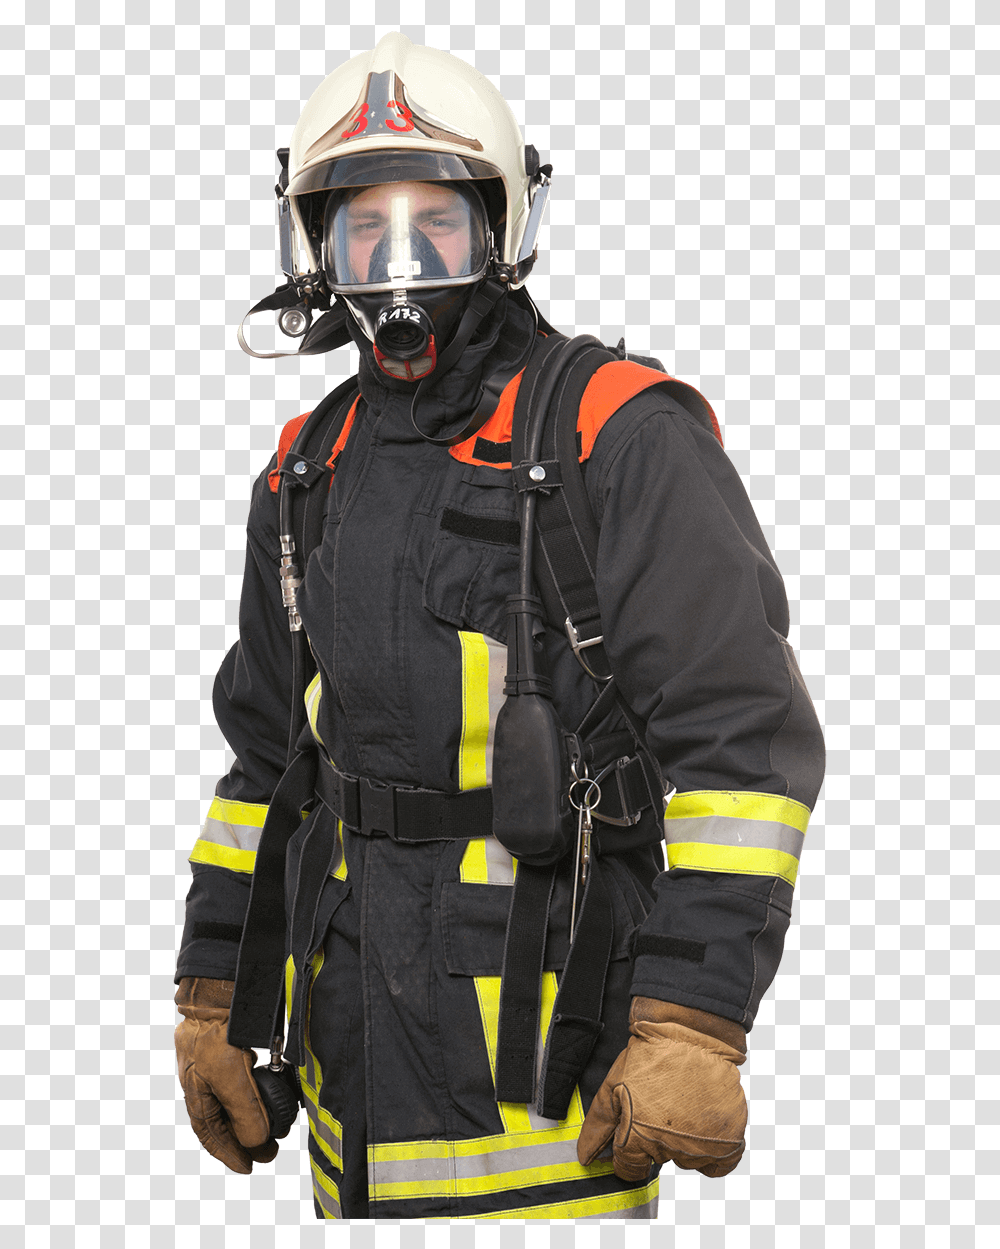 Fire Fighter Firefighter, Helmet, Apparel, Fireman Transparent Png